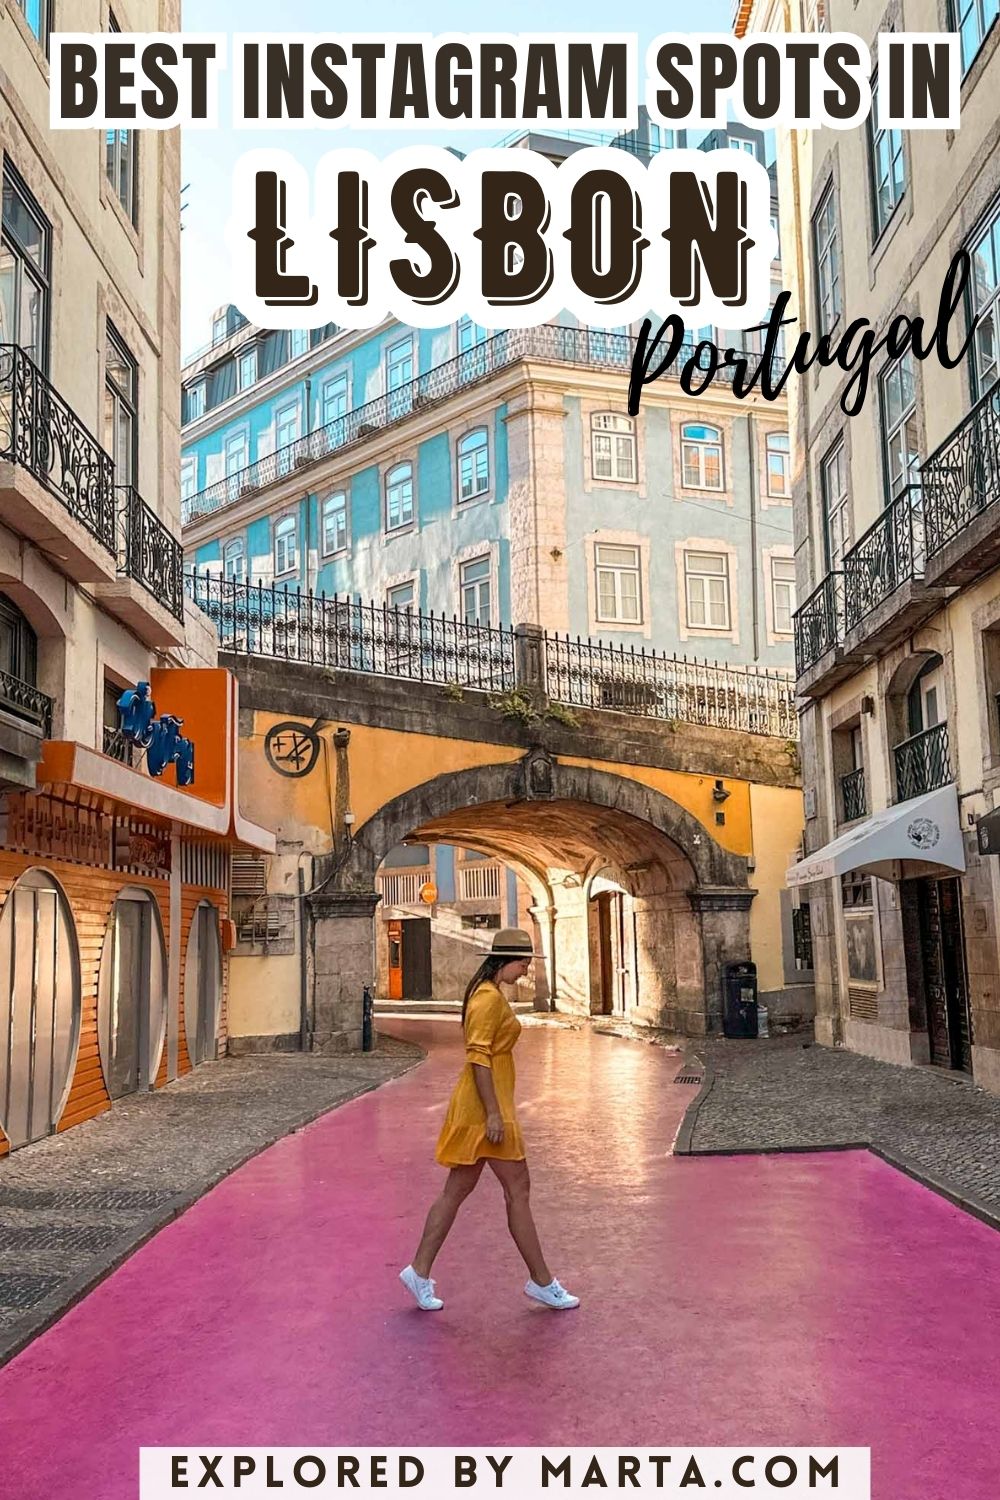 Best Instagram spots in Lisbon, Portugal